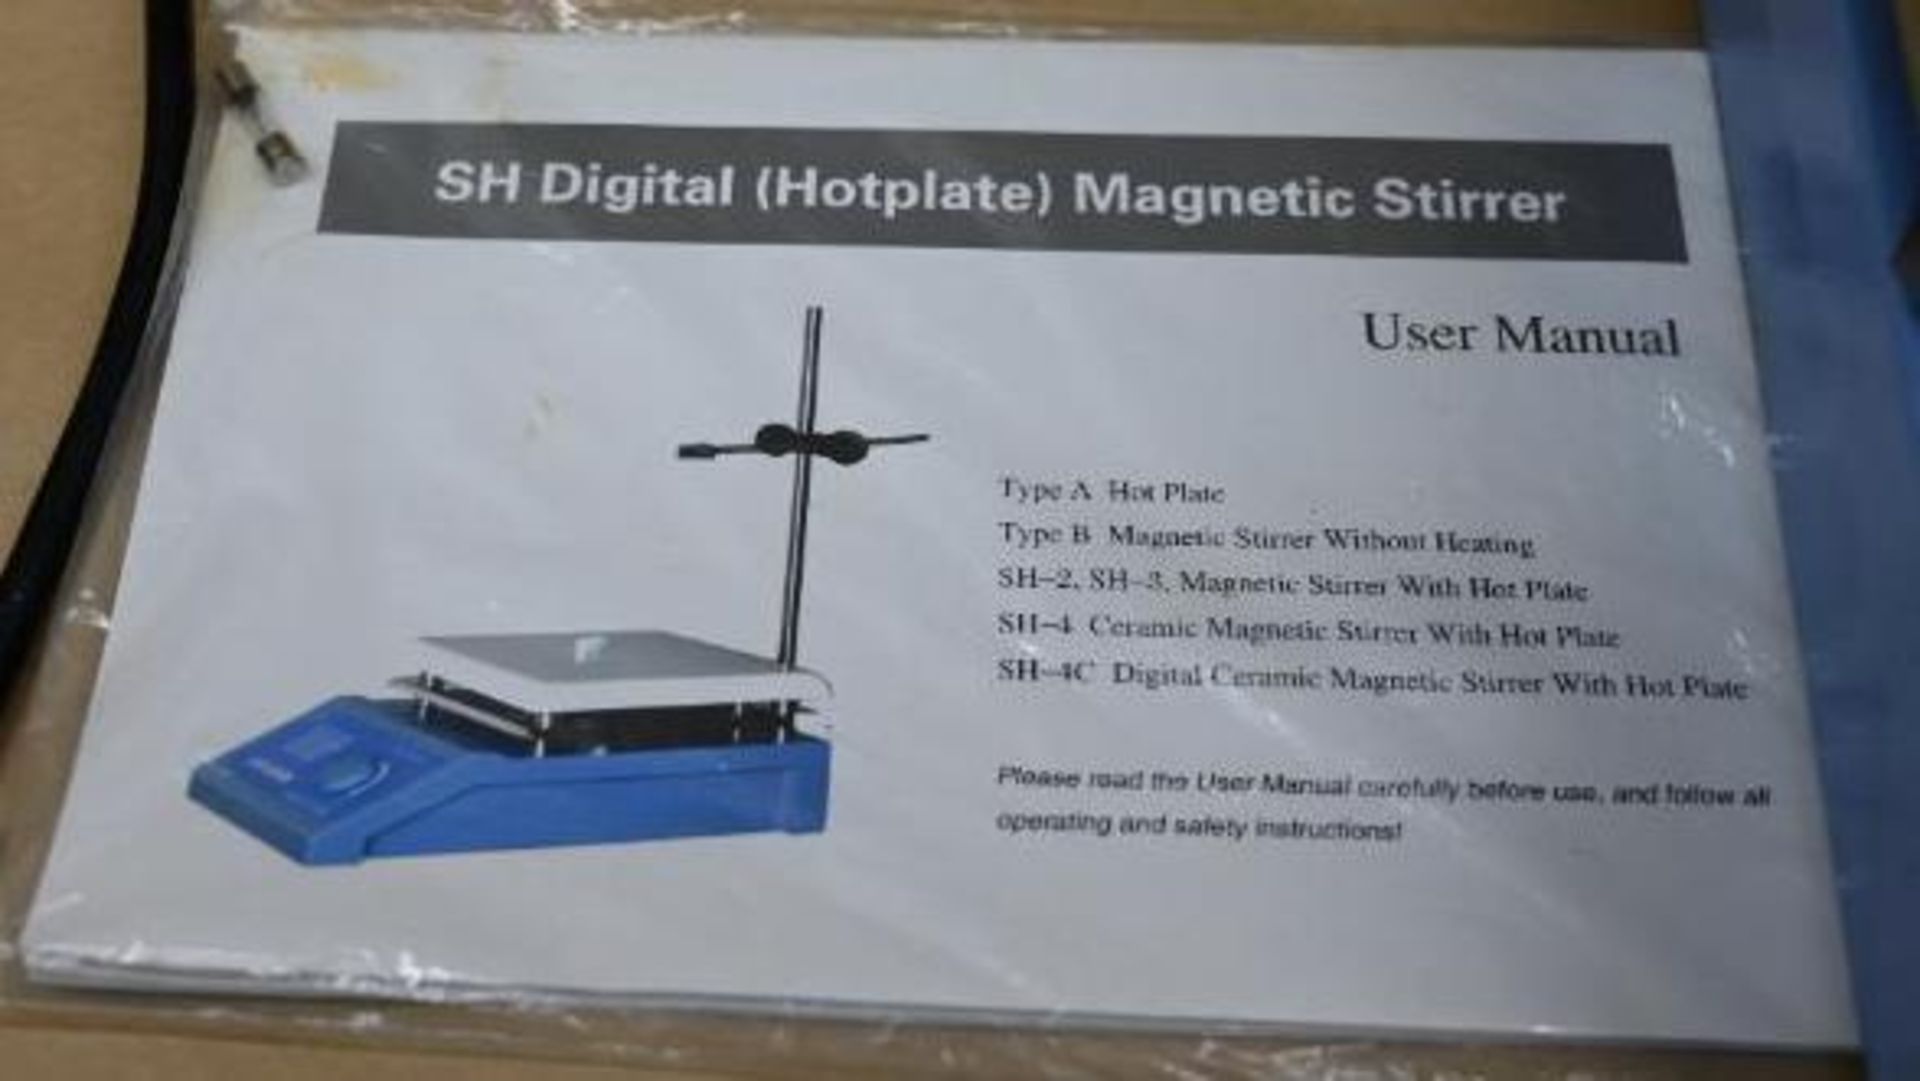 SH Digital Hot Plate Magnetic Stirrer - Image 4 of 9